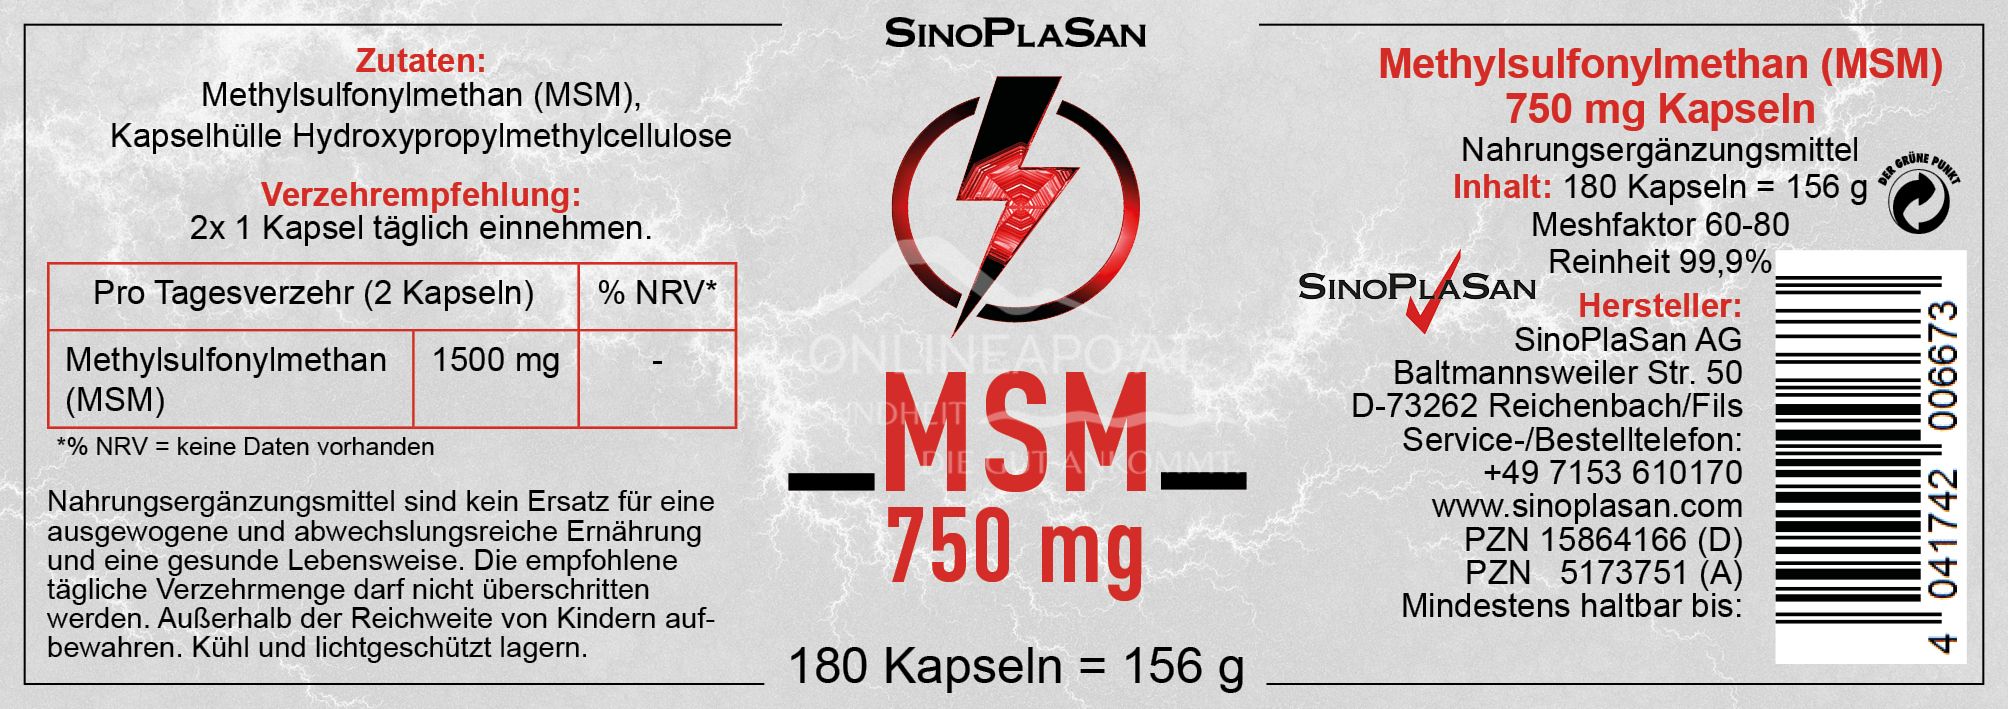 SinoPlaSan MSM 750 mg MONO Kapseln